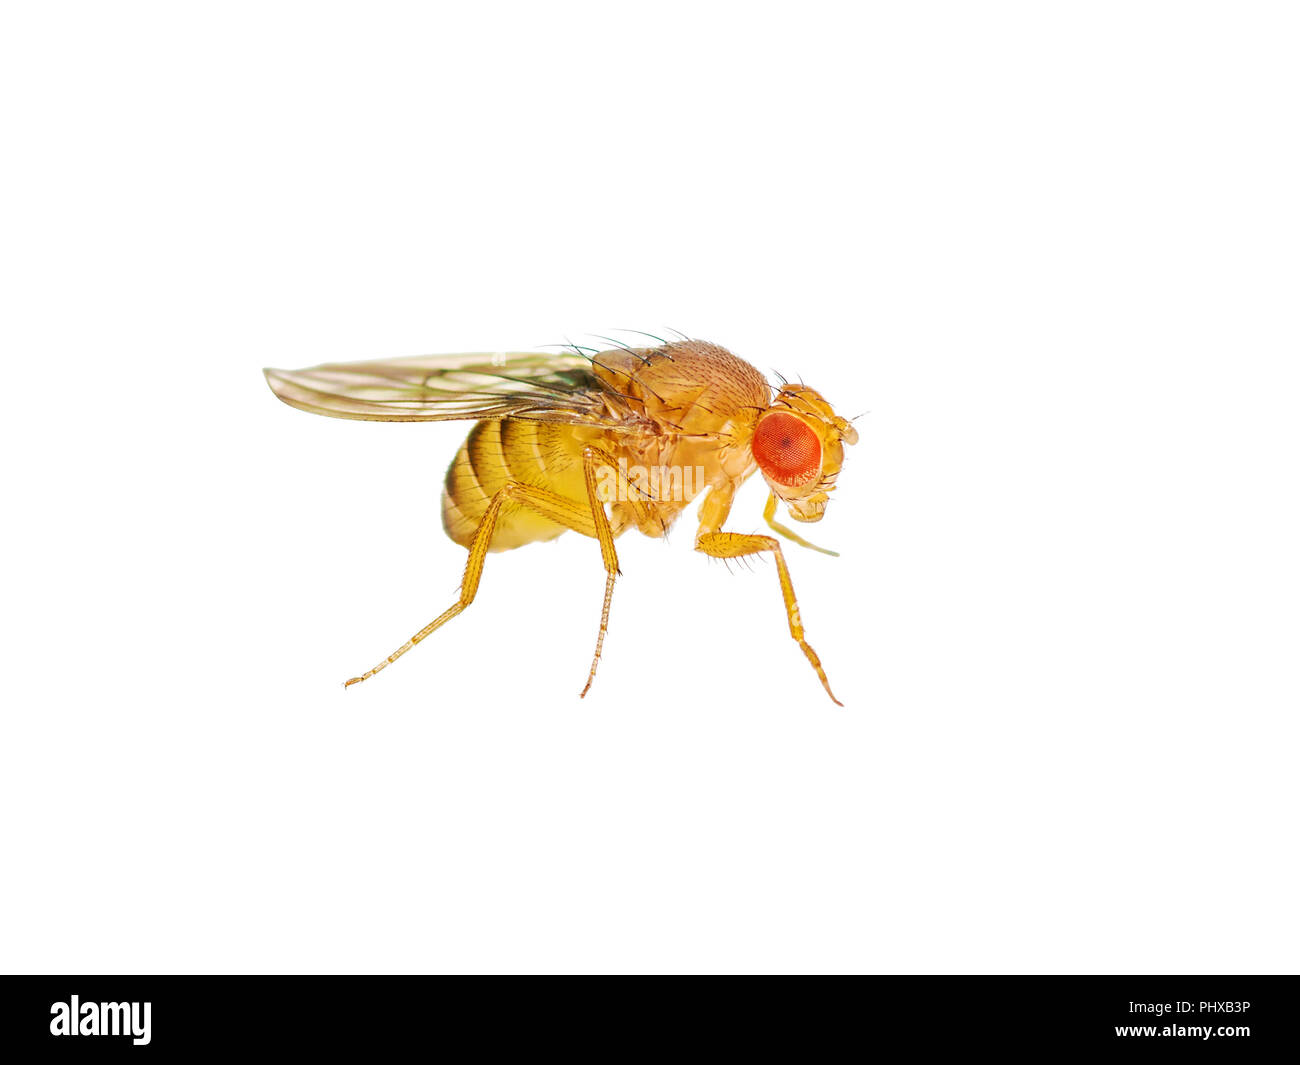 Macro Drosophila Mosca della frutta isolato di insetto su sfondo bianco Foto Stock